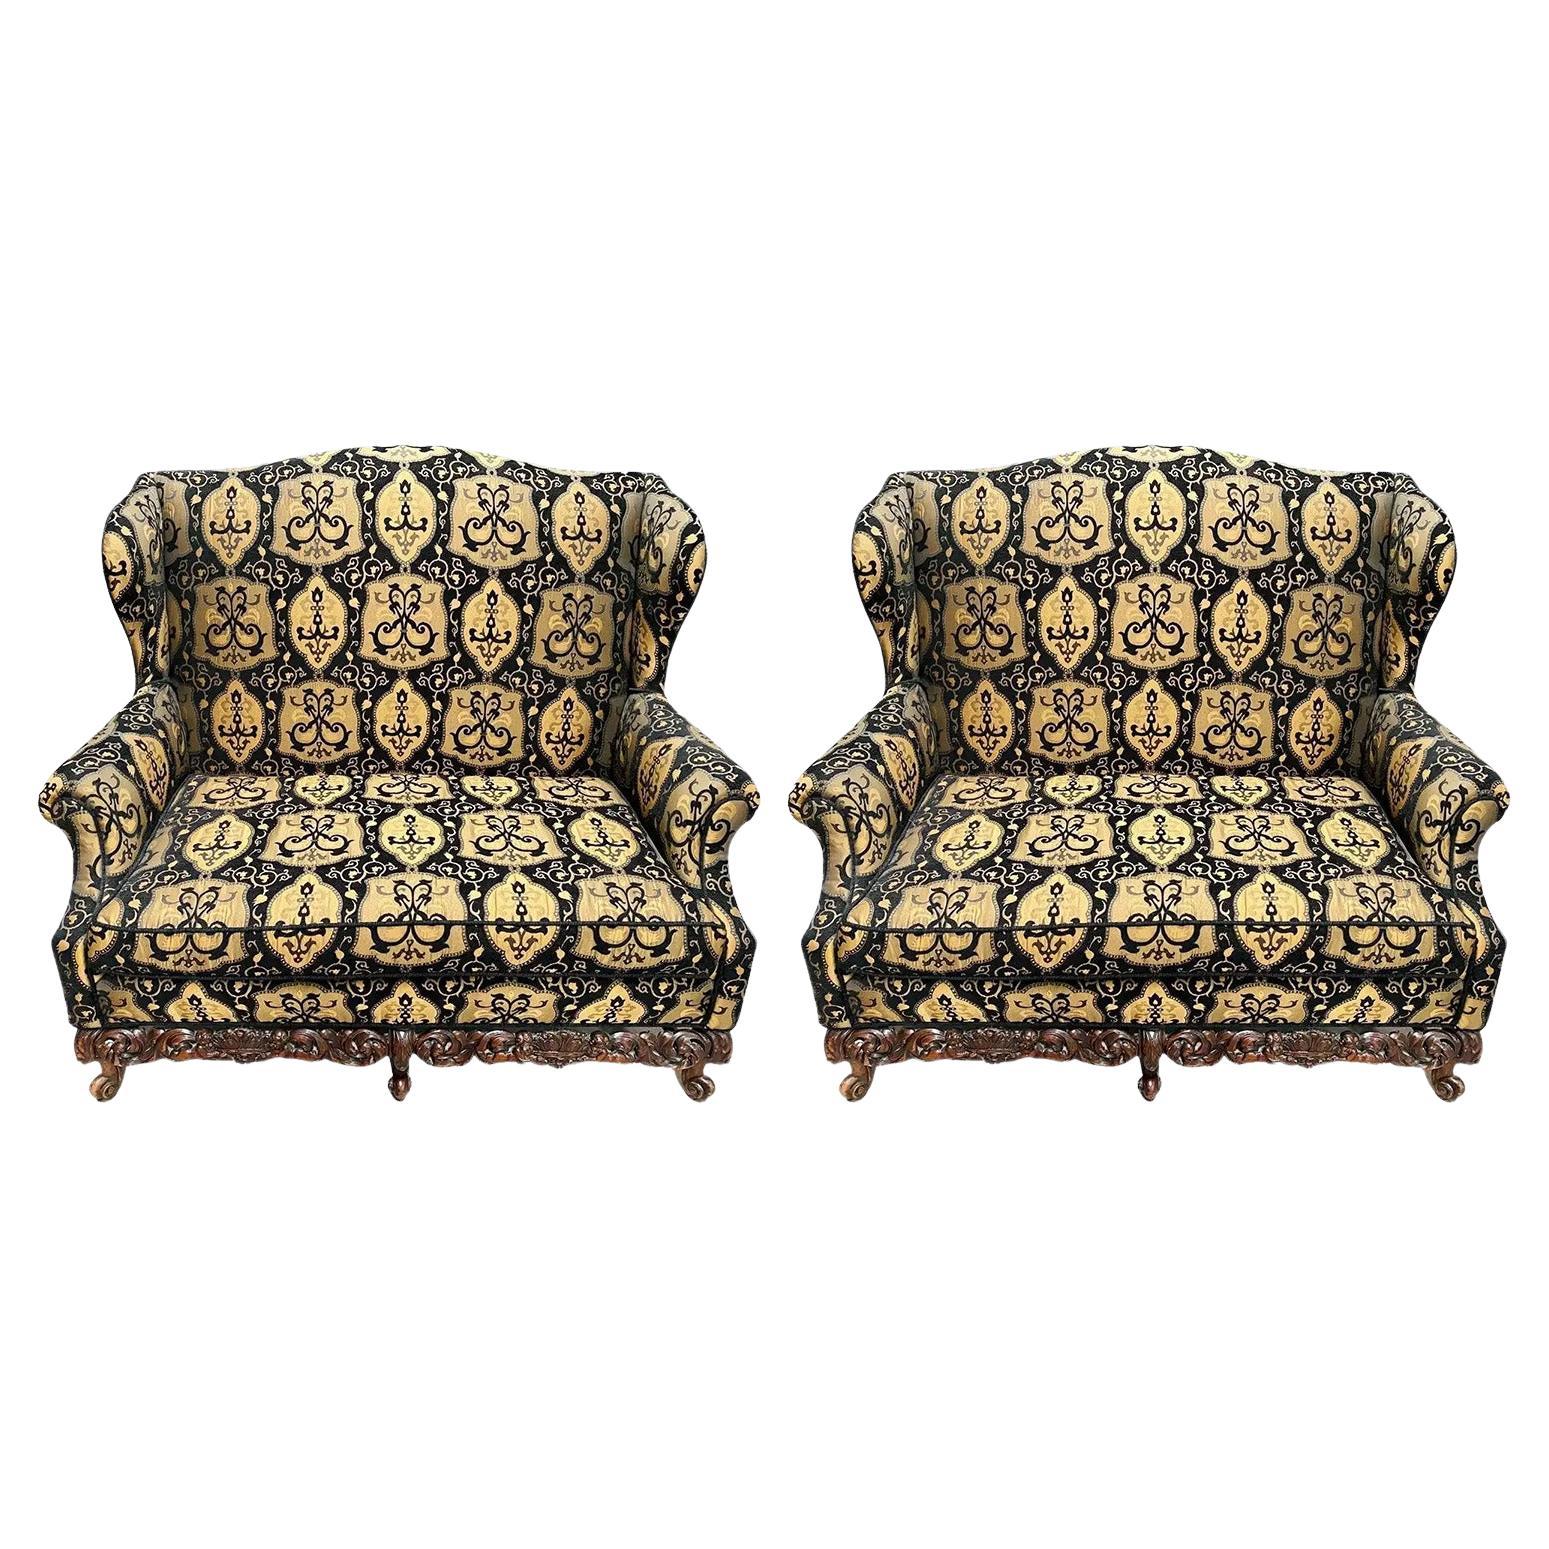 Canapé ou sofa italien de style Revive rococo, tapisserie noire et beige, une paire